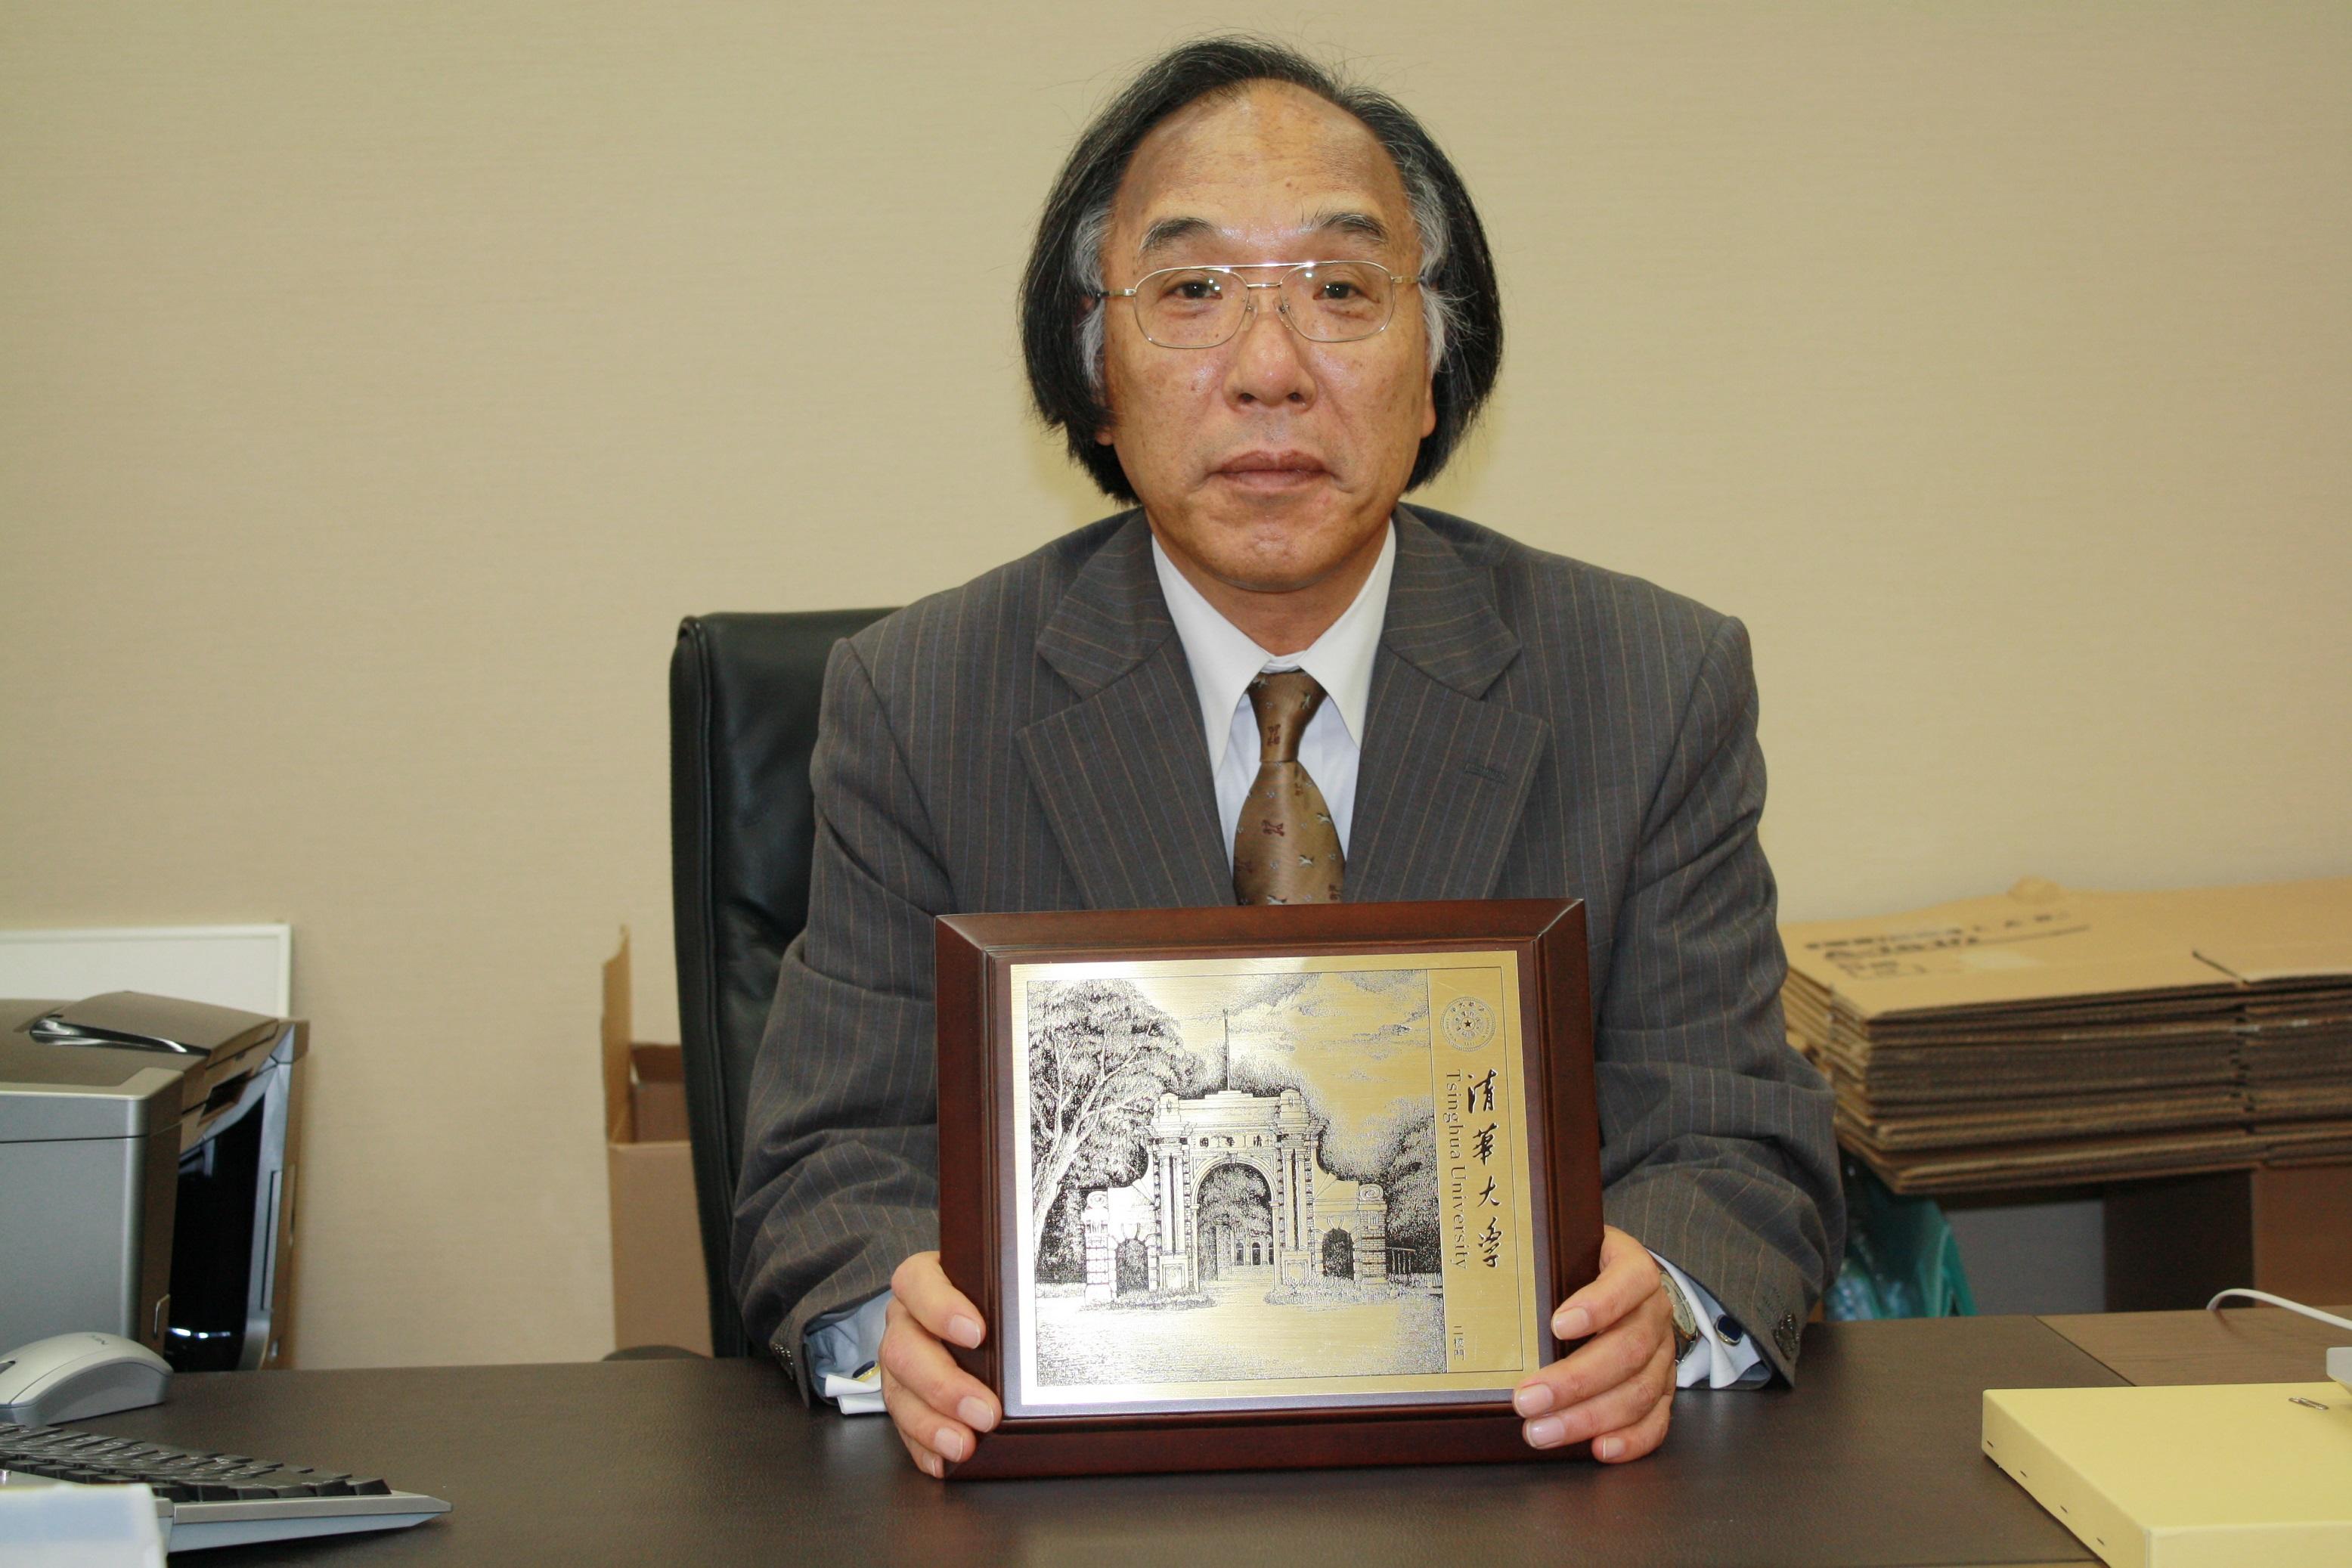 交流10周年で清華大学から贈られた記念品を手にする木村法学部長